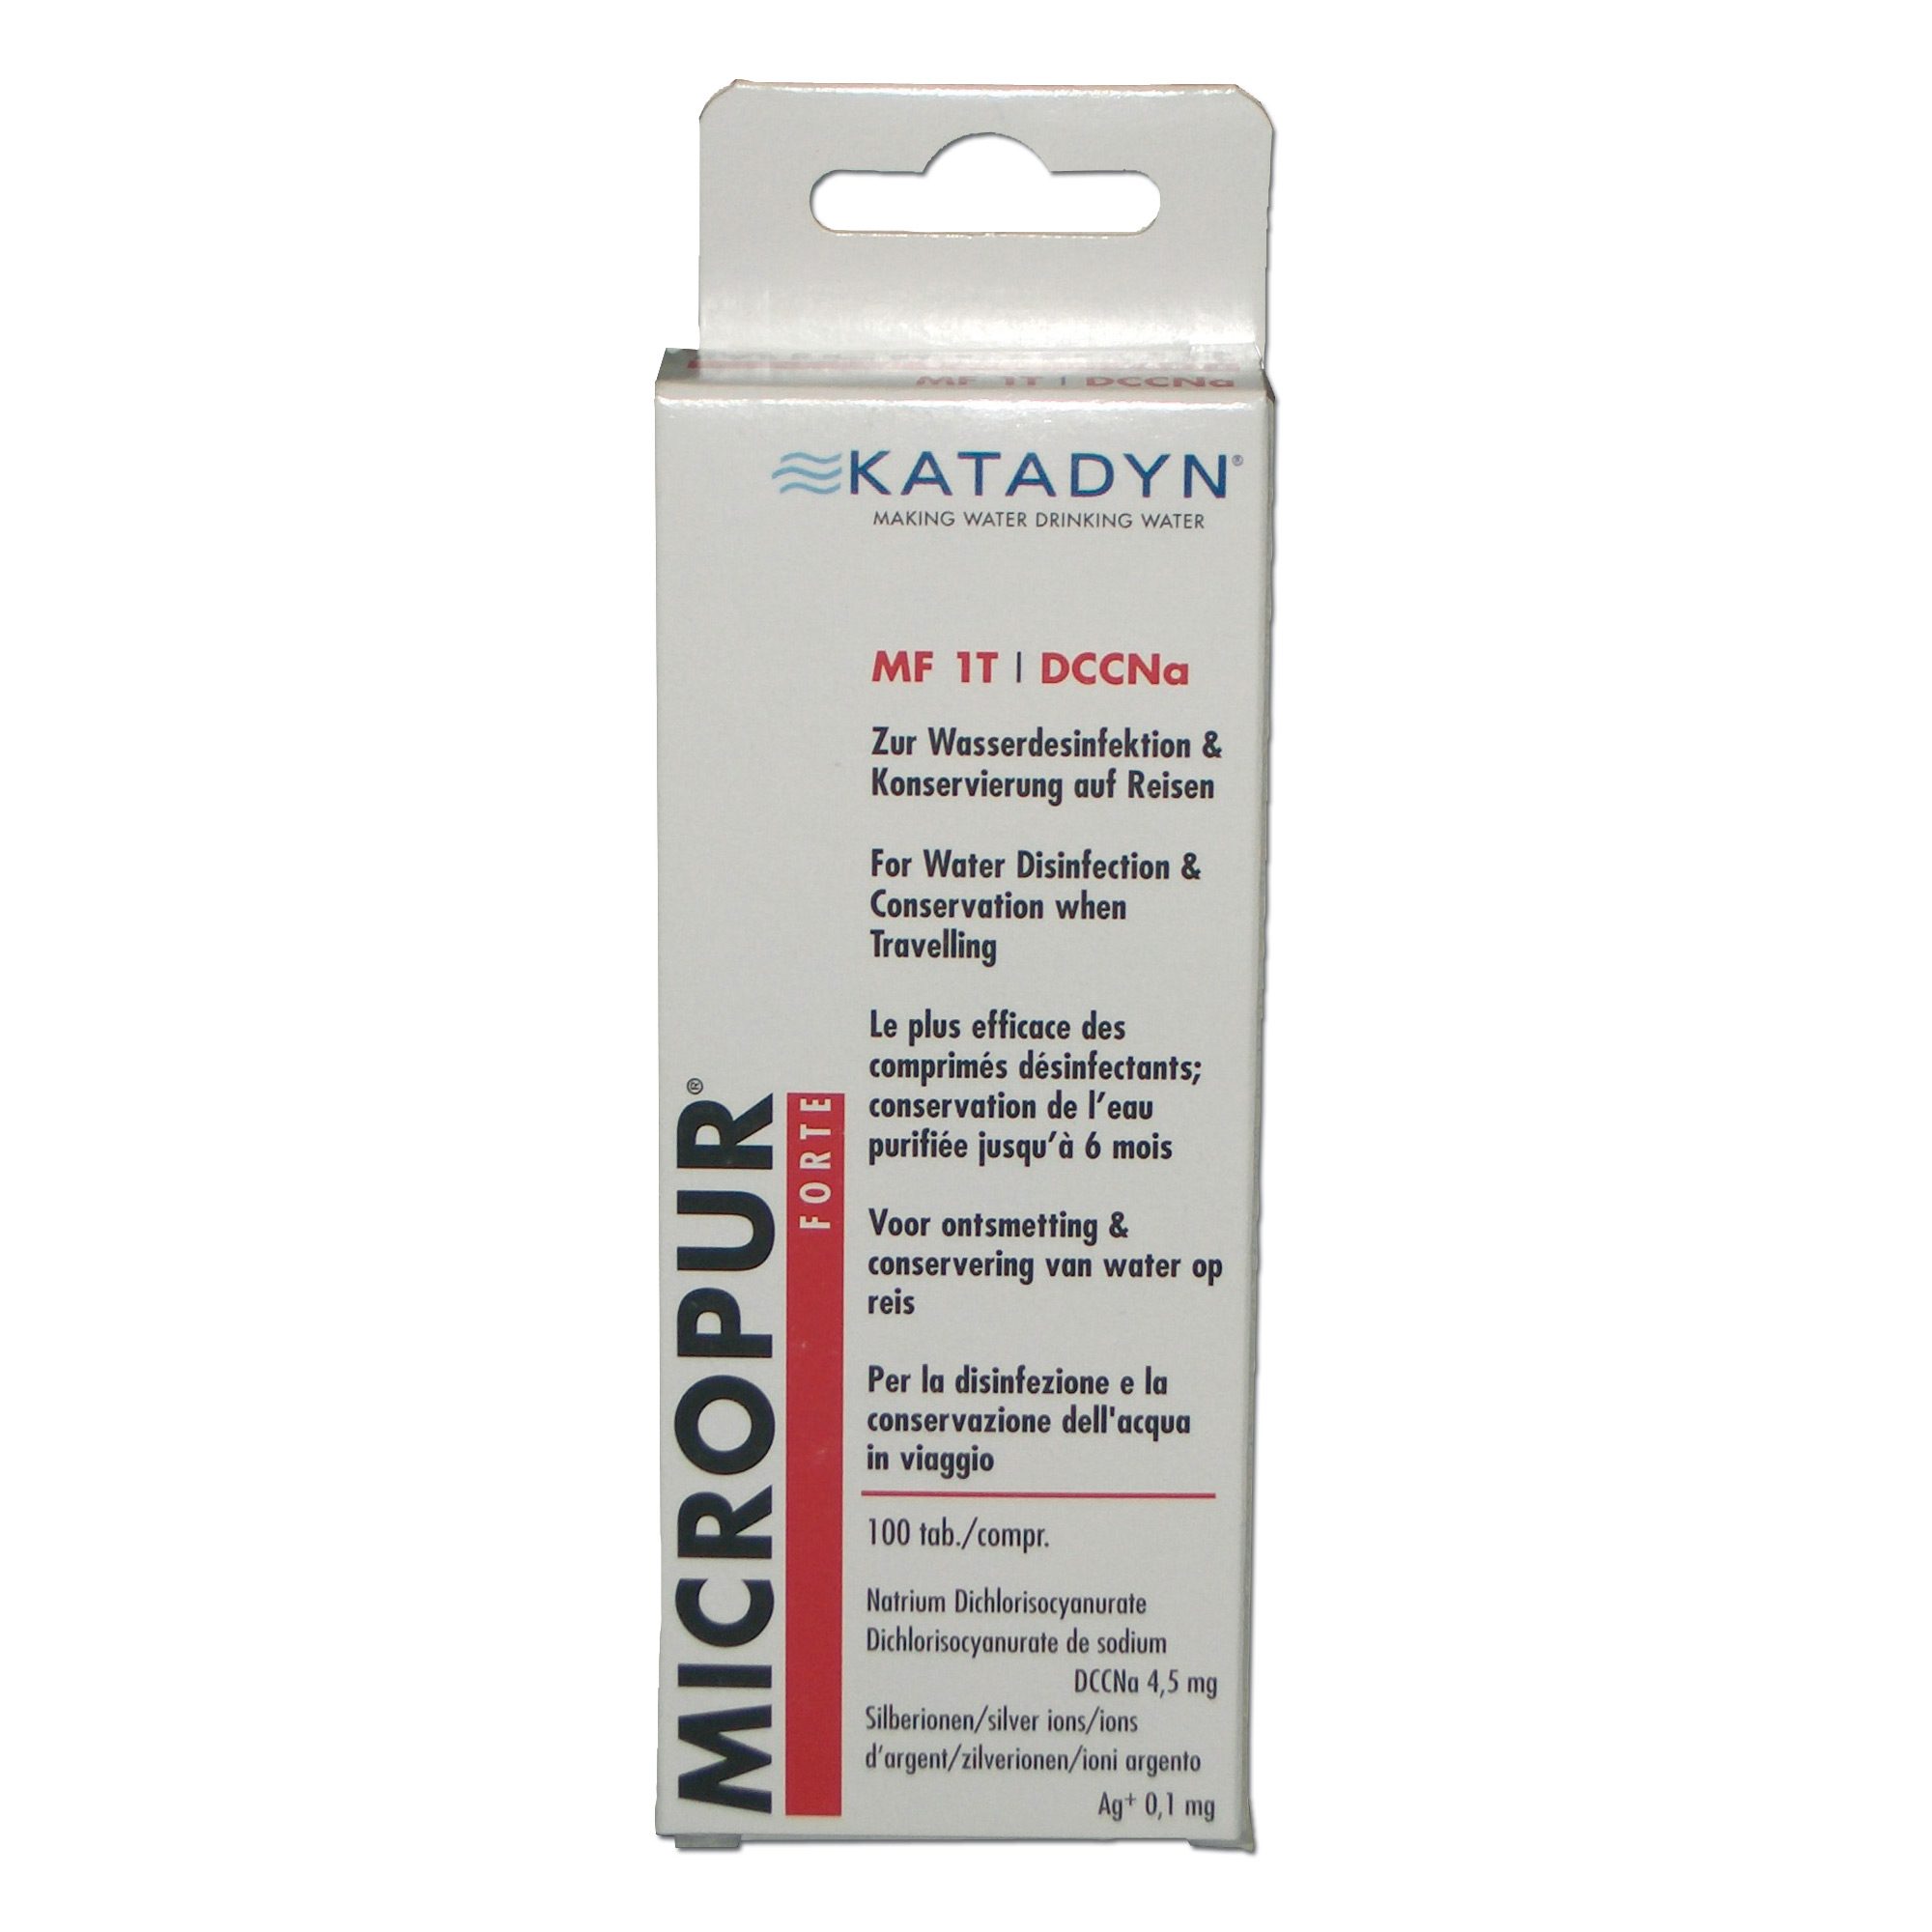 Katadyn Micropur Forte M1T 100 Tabletten Wasserentkeimungstabletten 